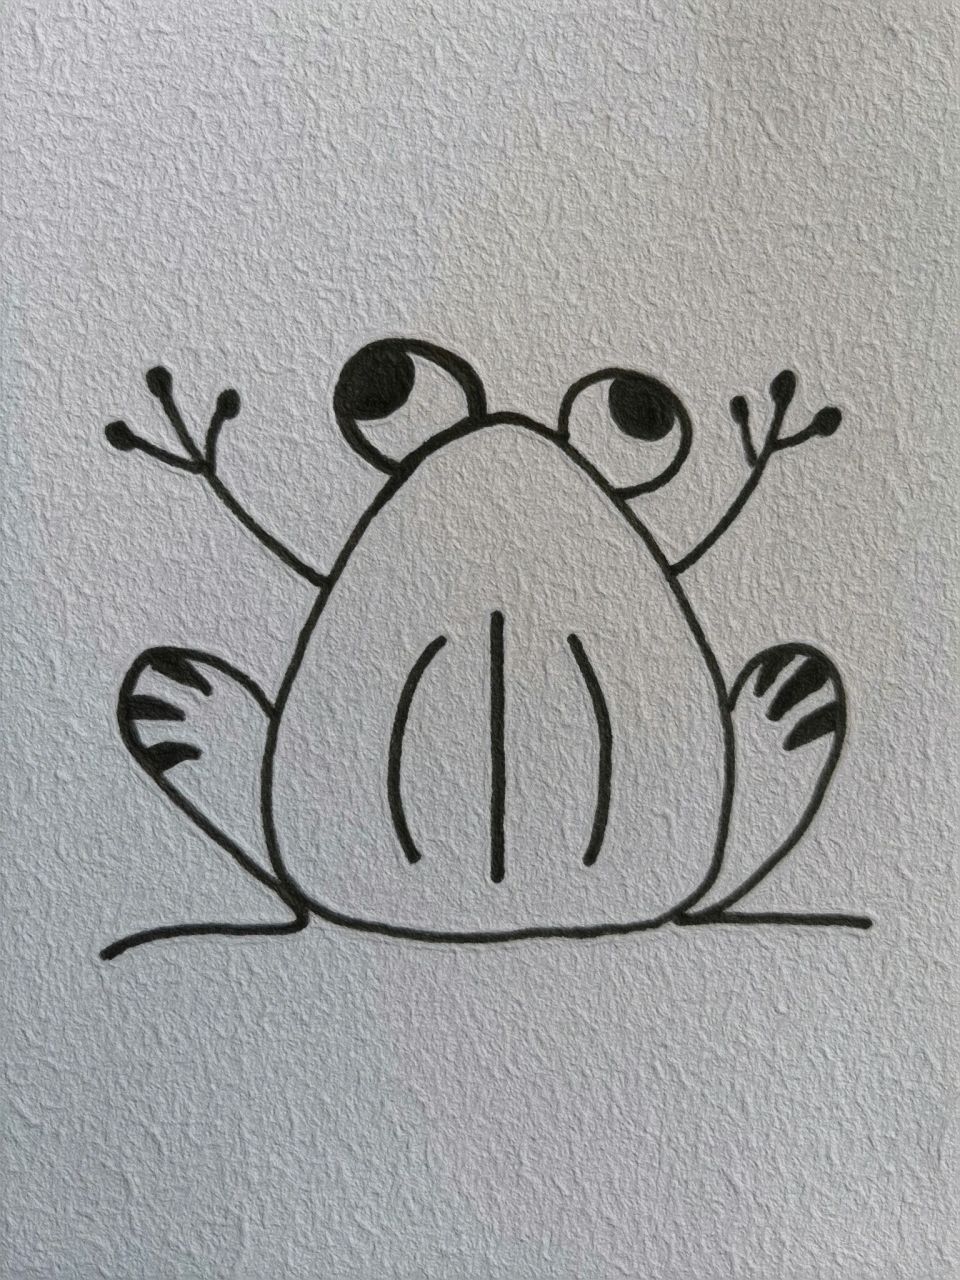 青蛙的简笔画法图片